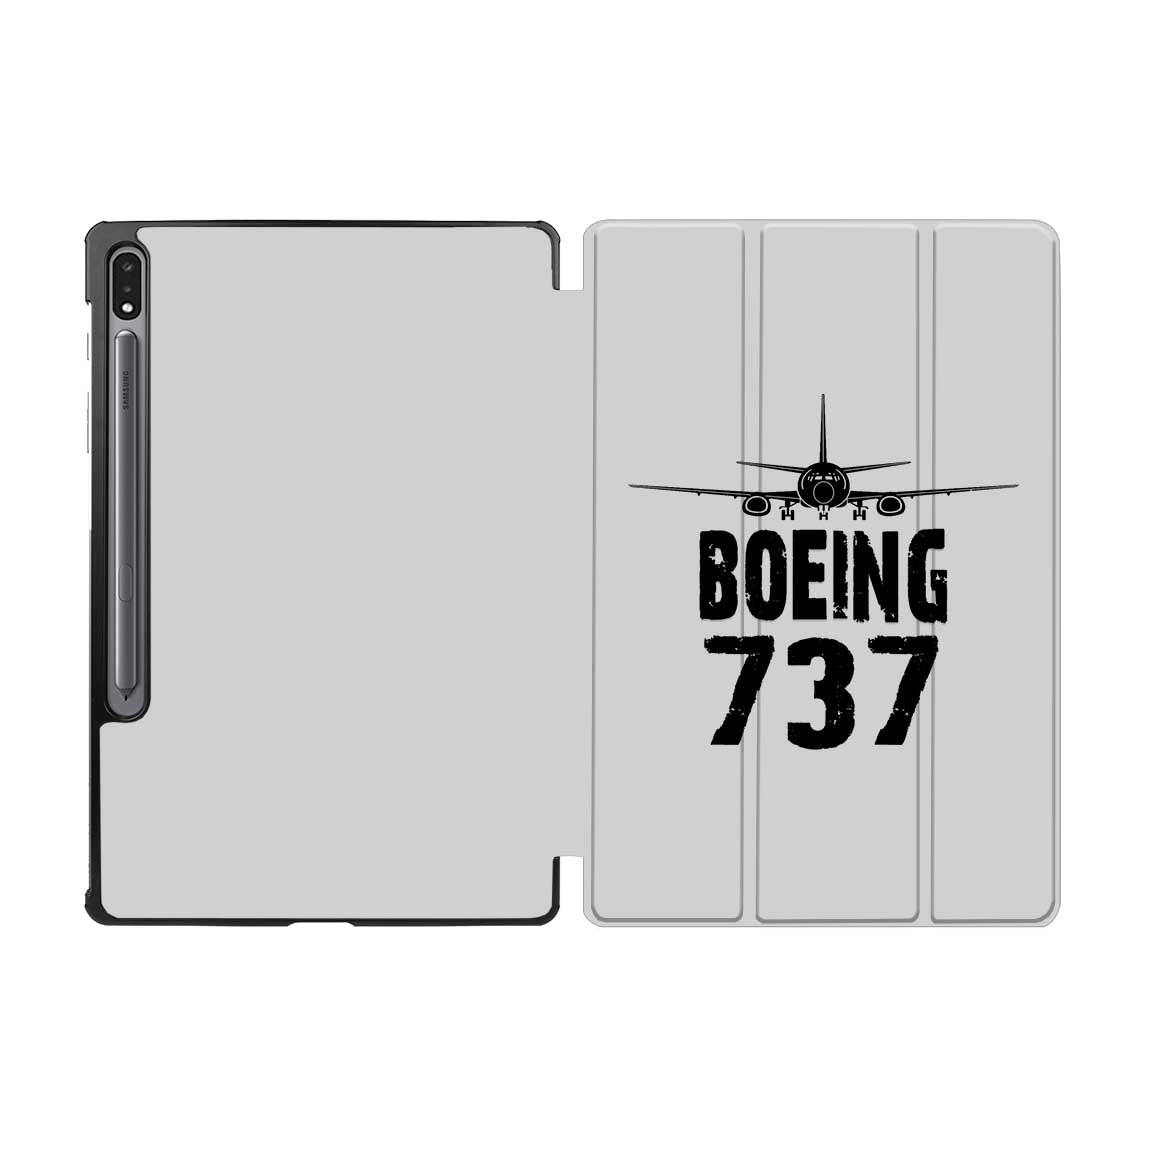 Boeing 737 & Plane Designed Samsung Tablet Cases